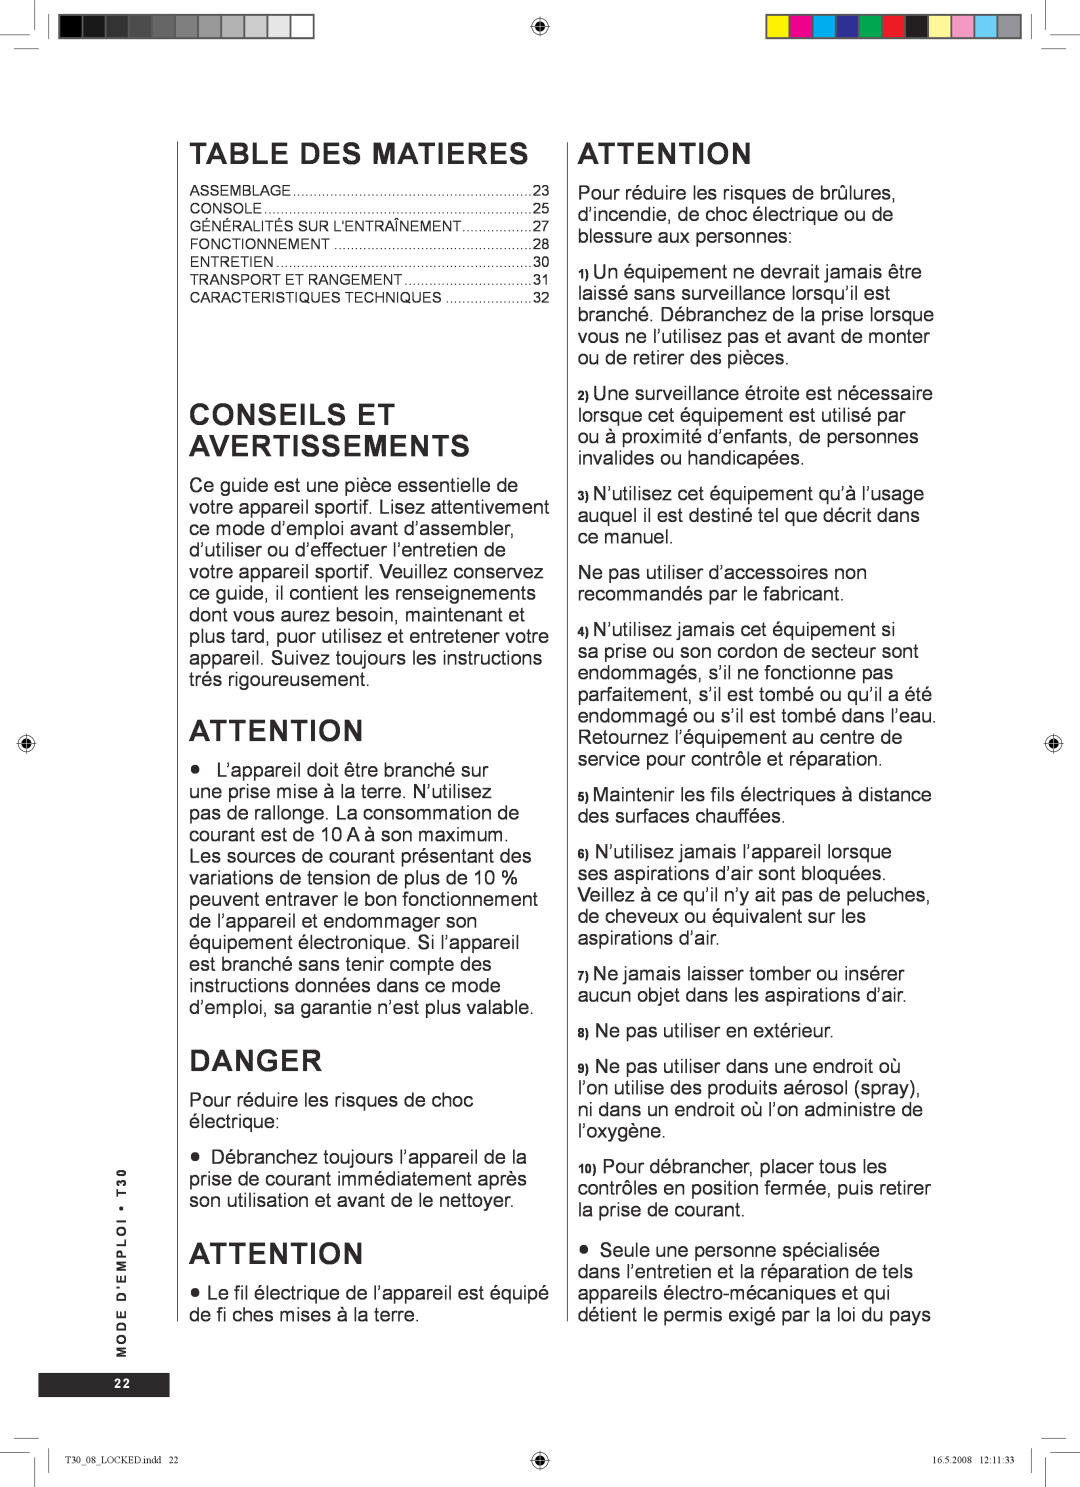 Tunturi T30 owner manual Table des Matieres, Conseils et avertissements, Danger 